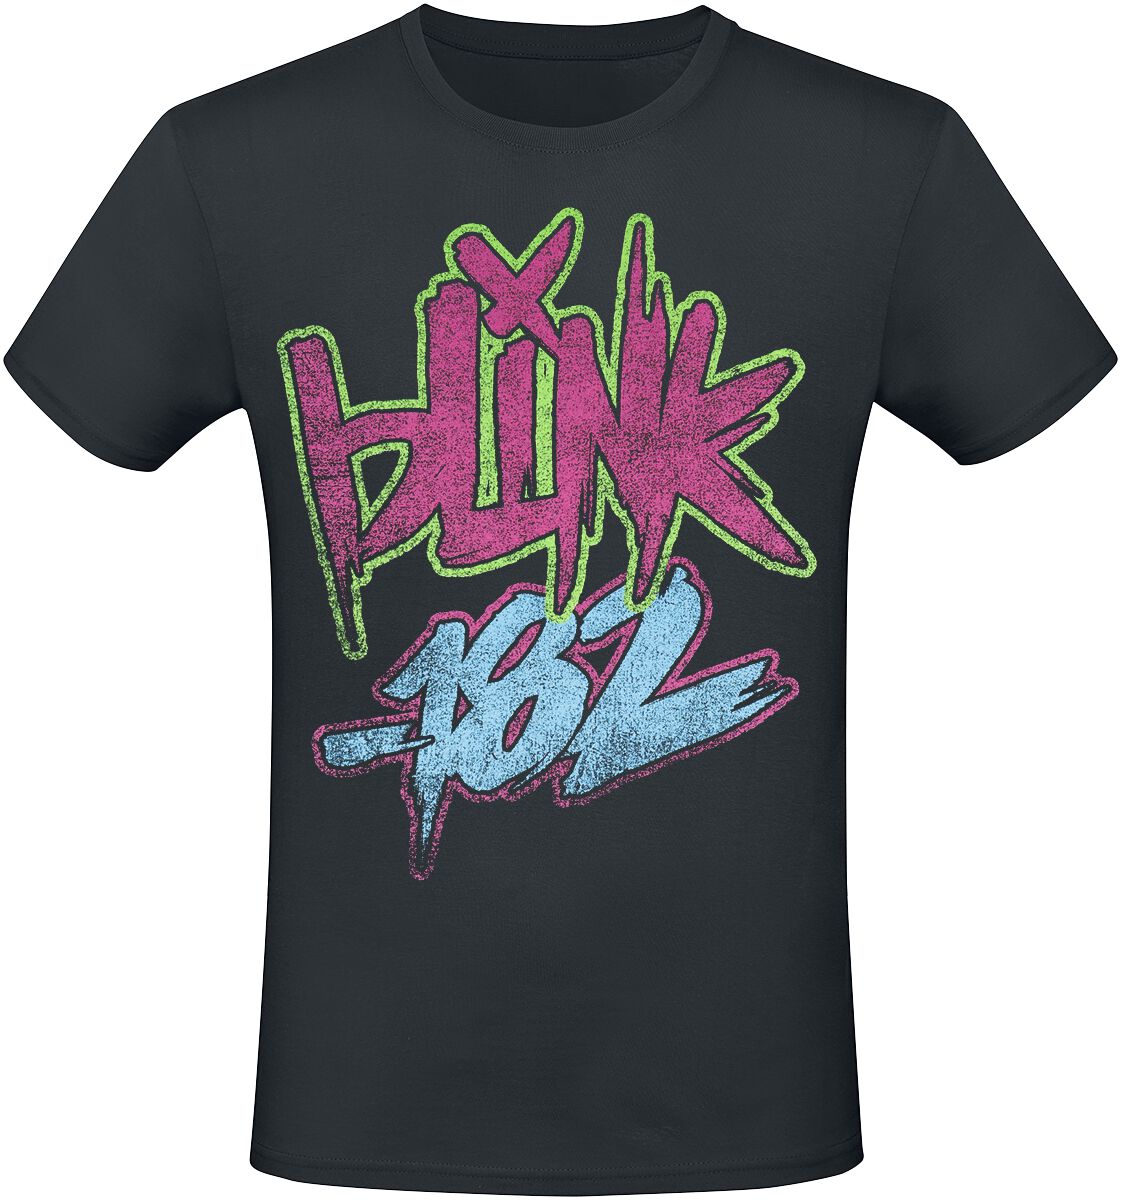 Blink-182 T-Shirt - Text - S bis 3XL - für Männer - Größe XL - schwarz  - Lizenziertes Merchandise!